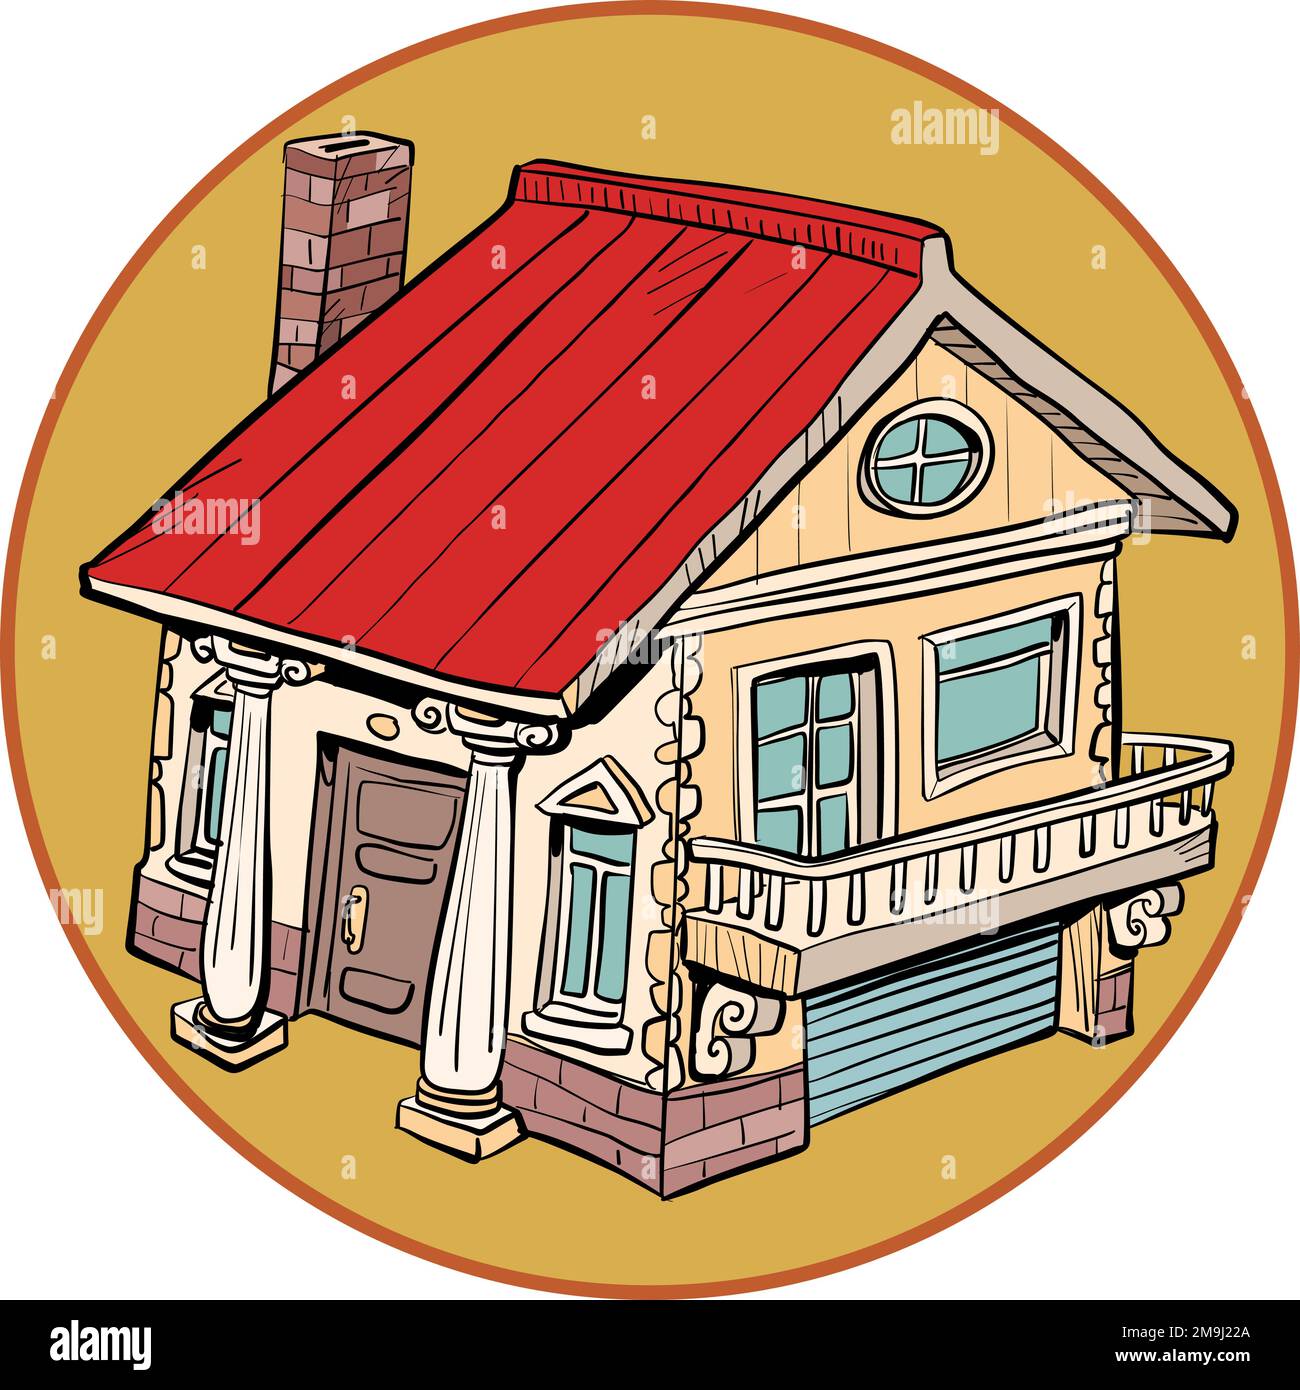 Ein gemütliches und wunderschönes Haus mit einem roten Dach, einer Garage, einem Kamin und mehreren Fenstern. Stock Vektor